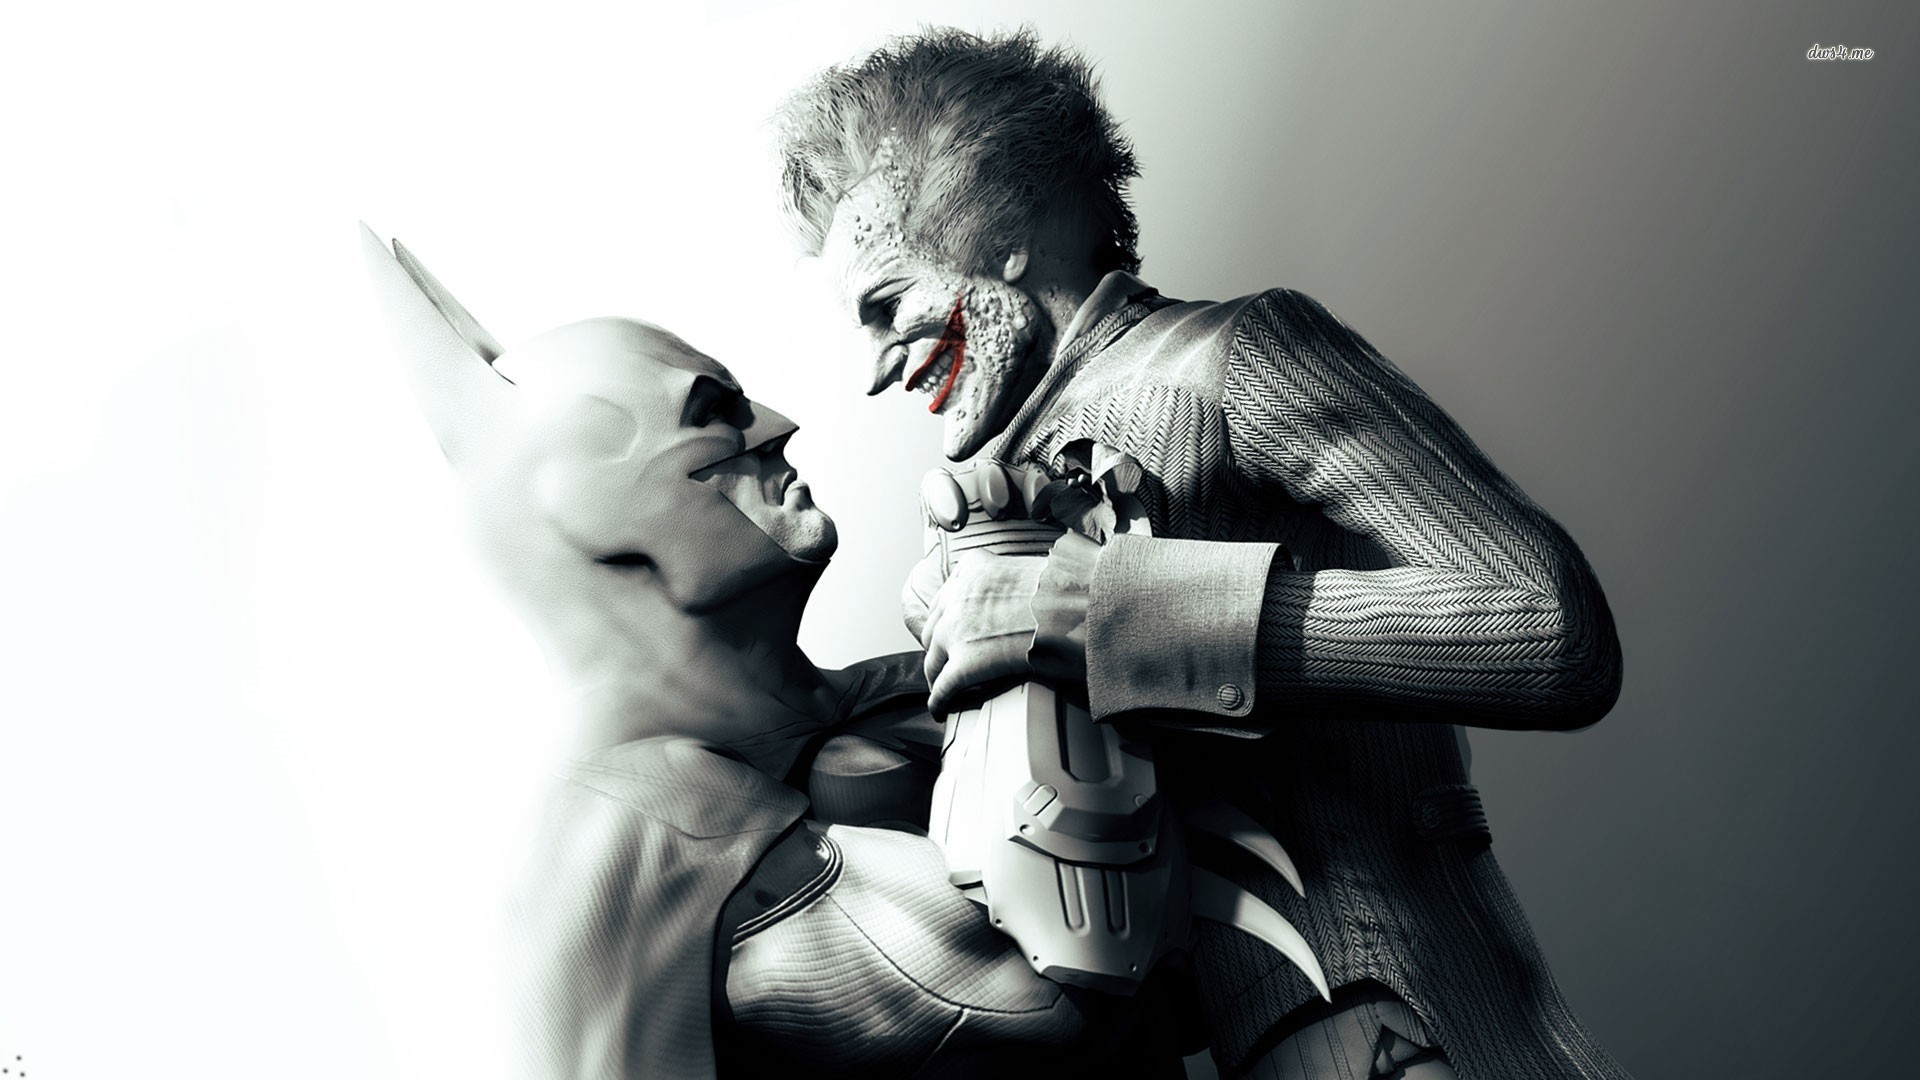 Batman vs Joker Wallpaper 73 images 1920x1080